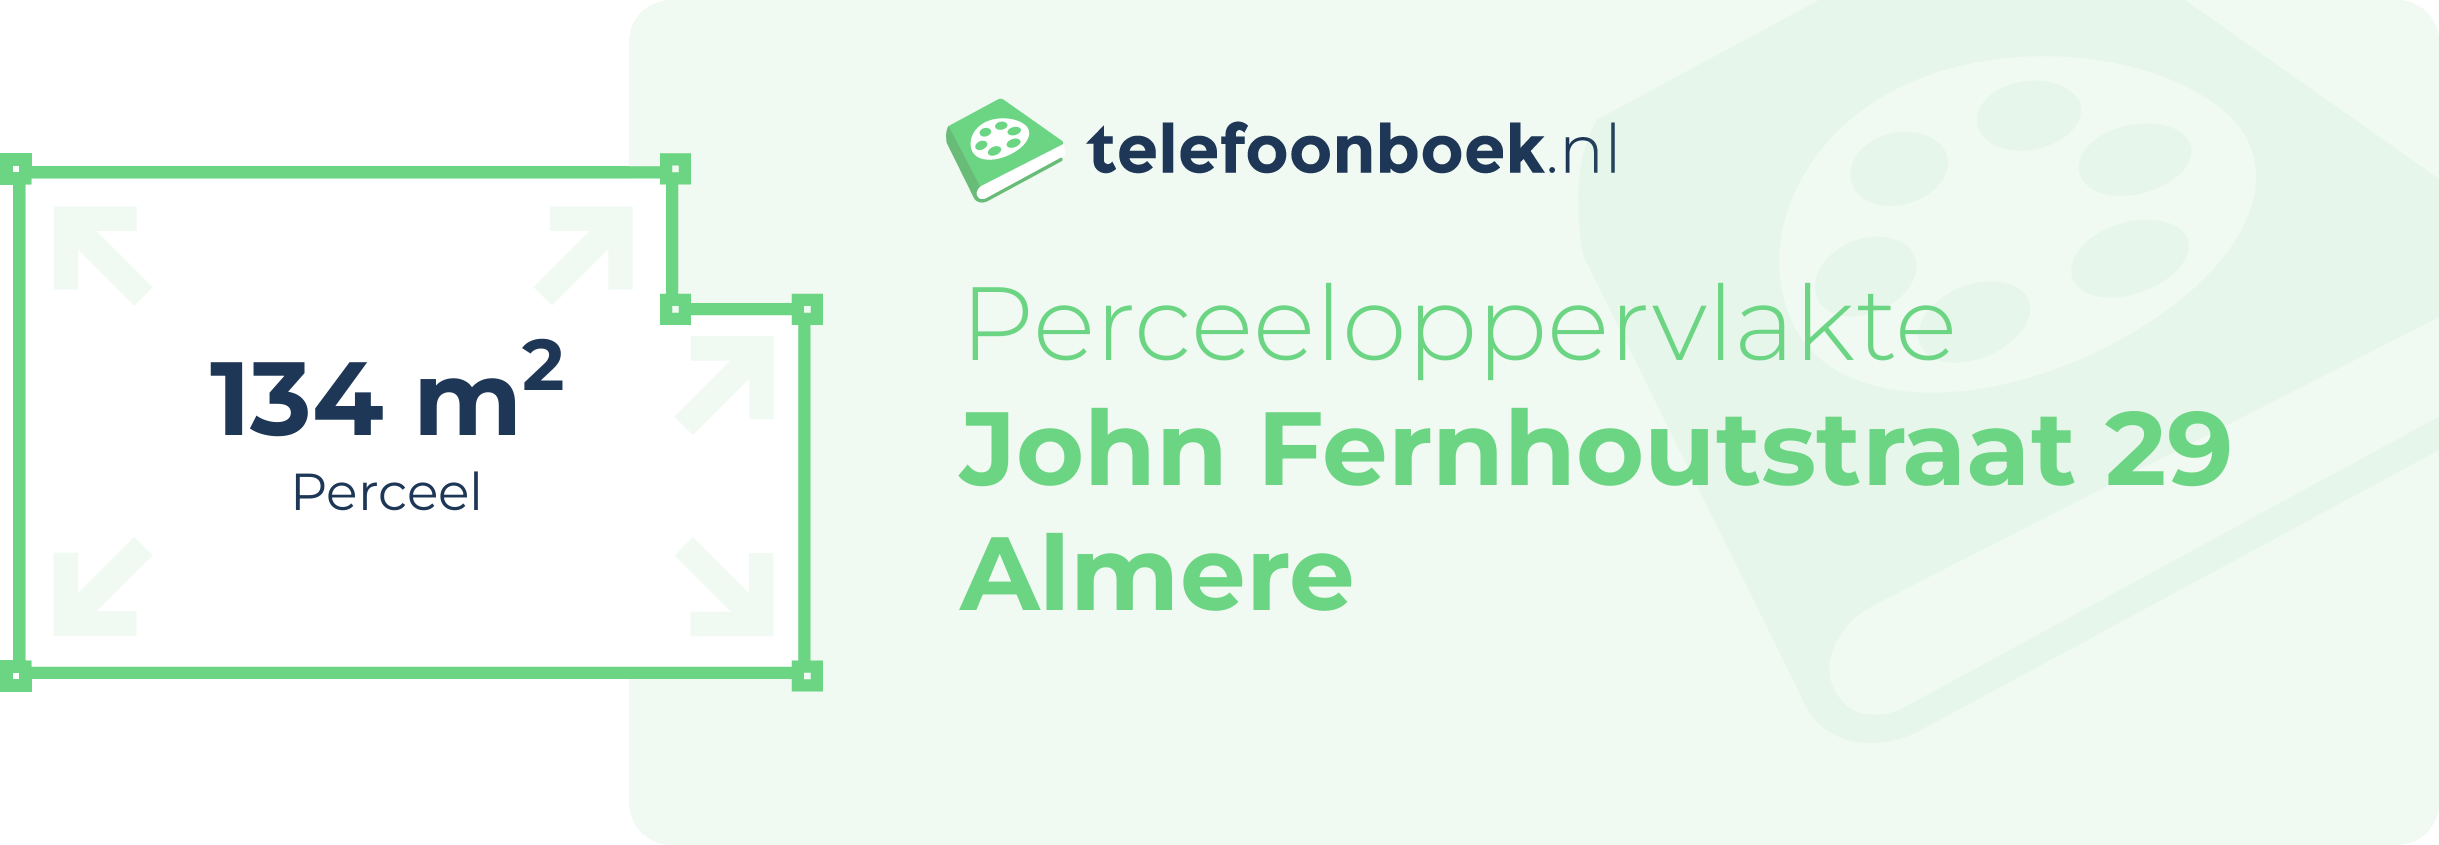 Perceeloppervlakte John Fernhoutstraat 29 Almere